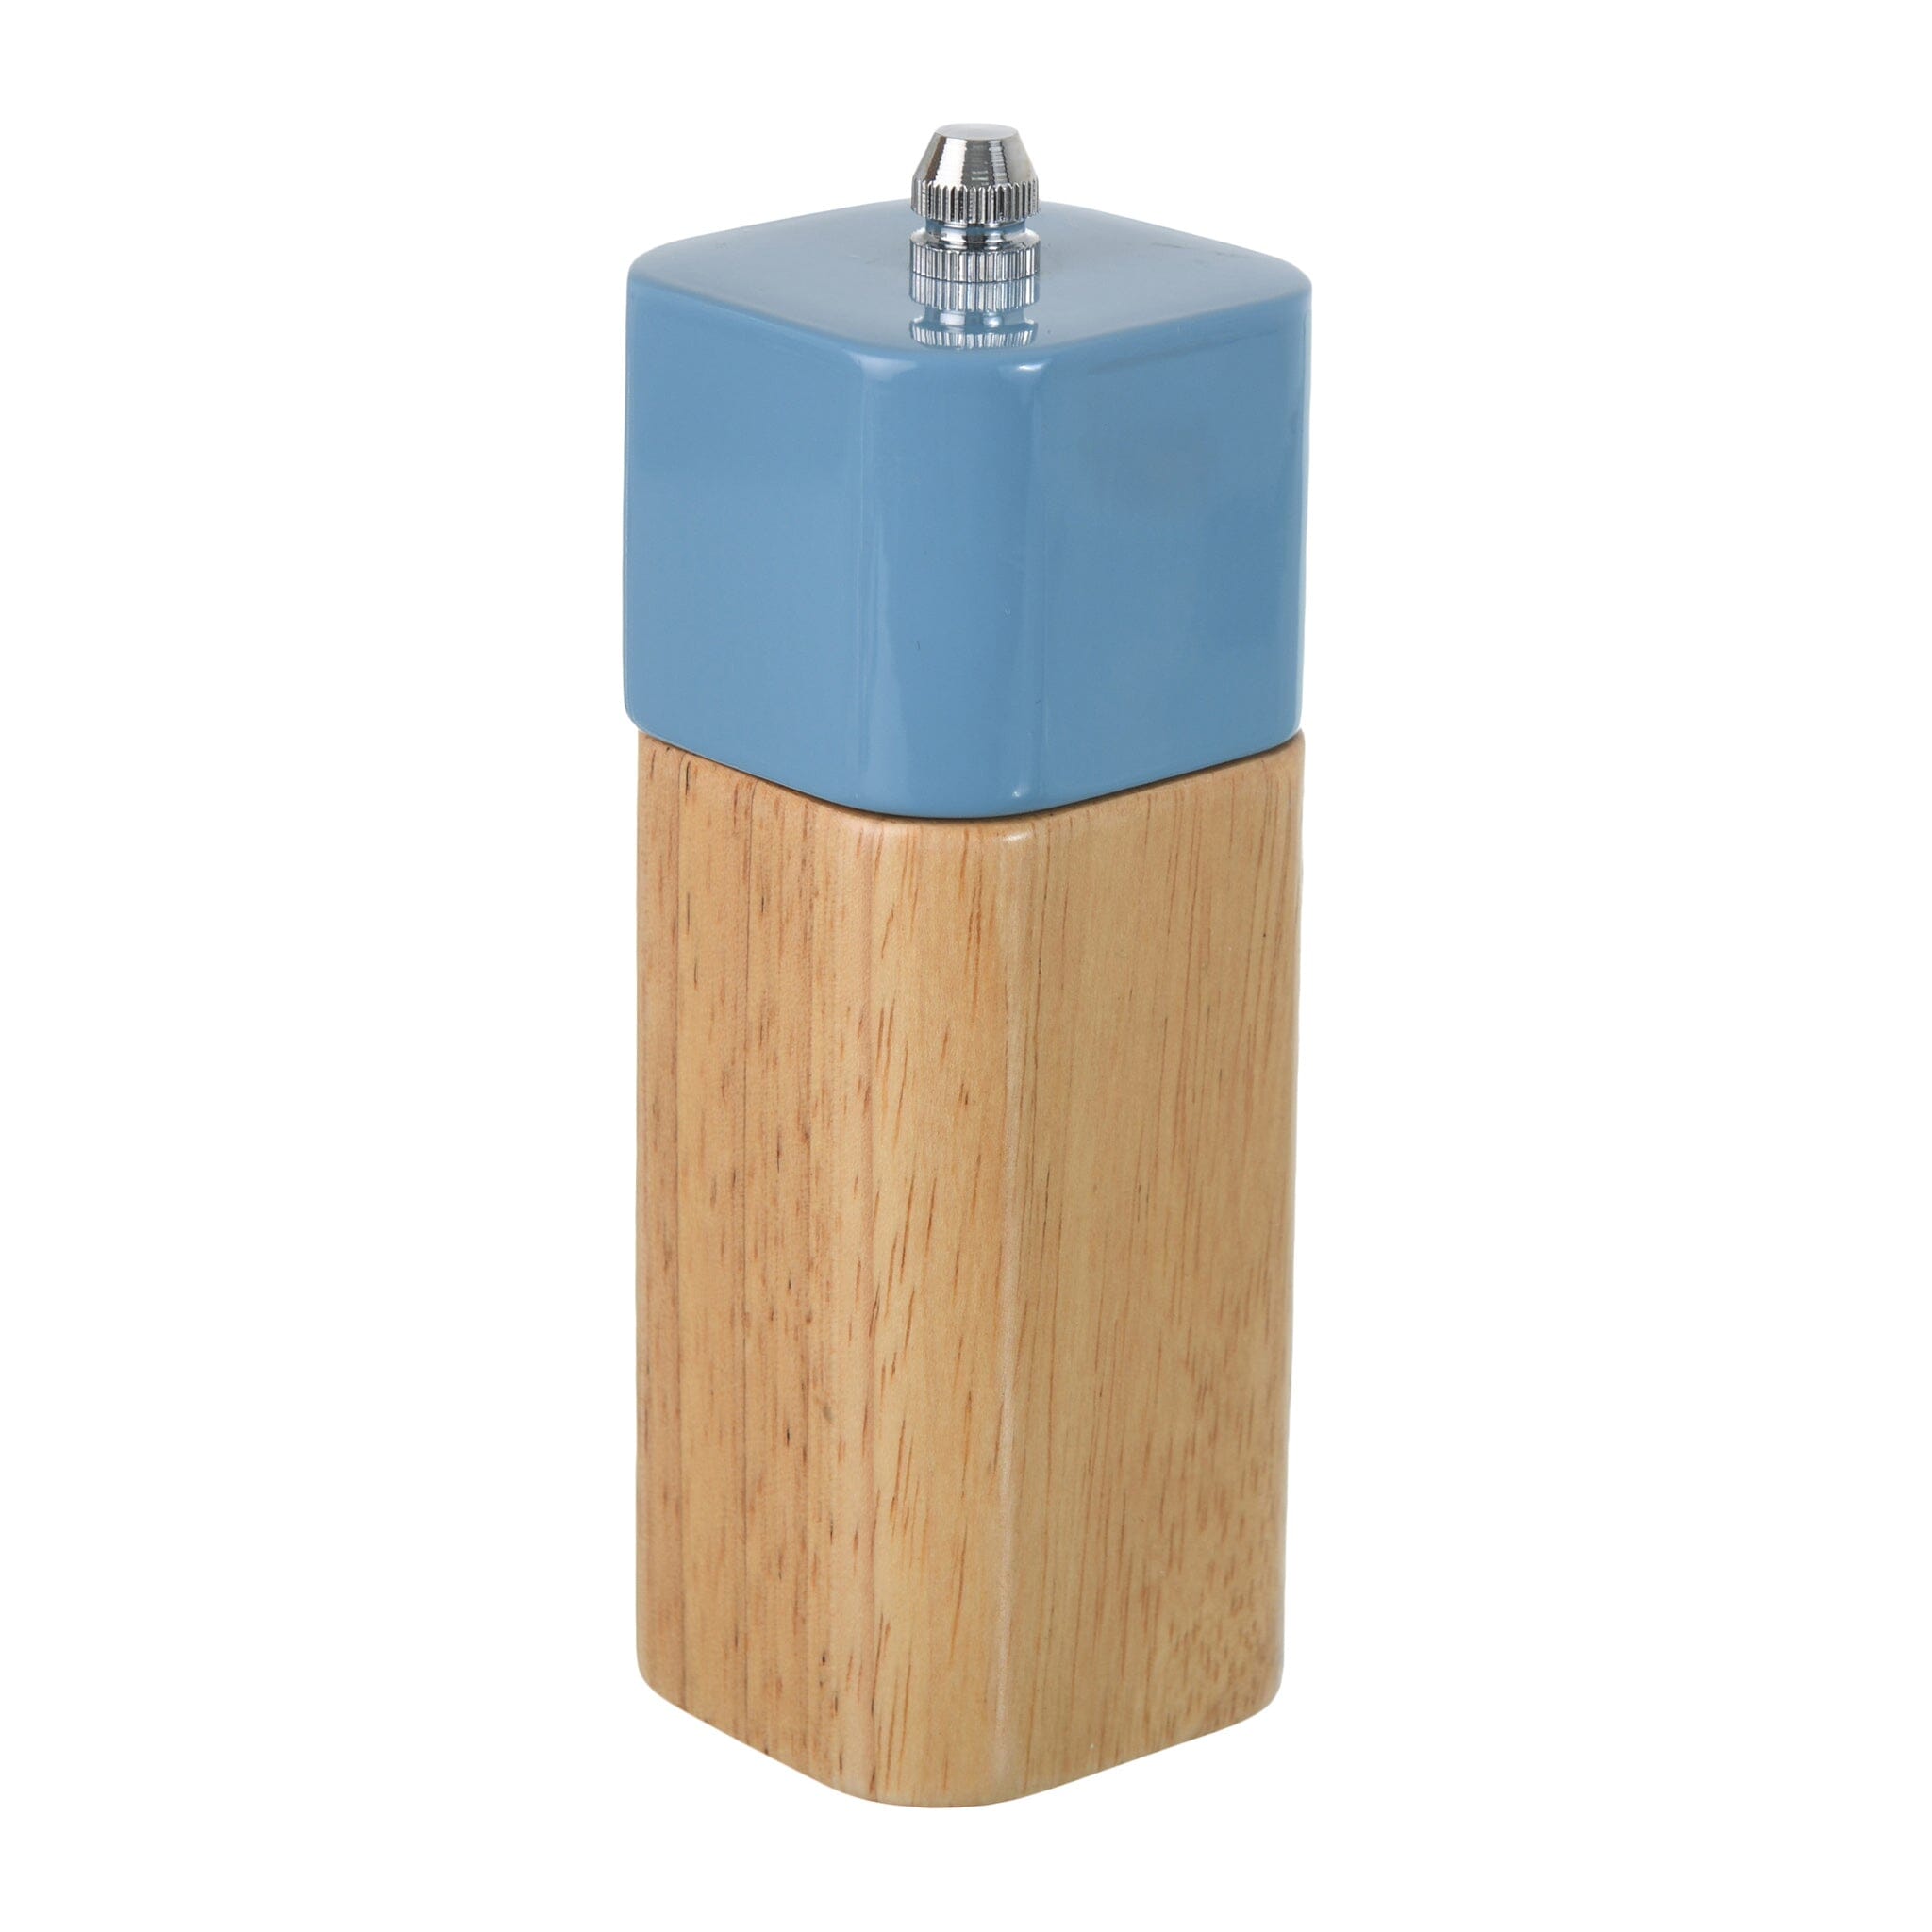 O'lala - Wooden Pepper Shaker - Blue - 5x13cm - 520008063